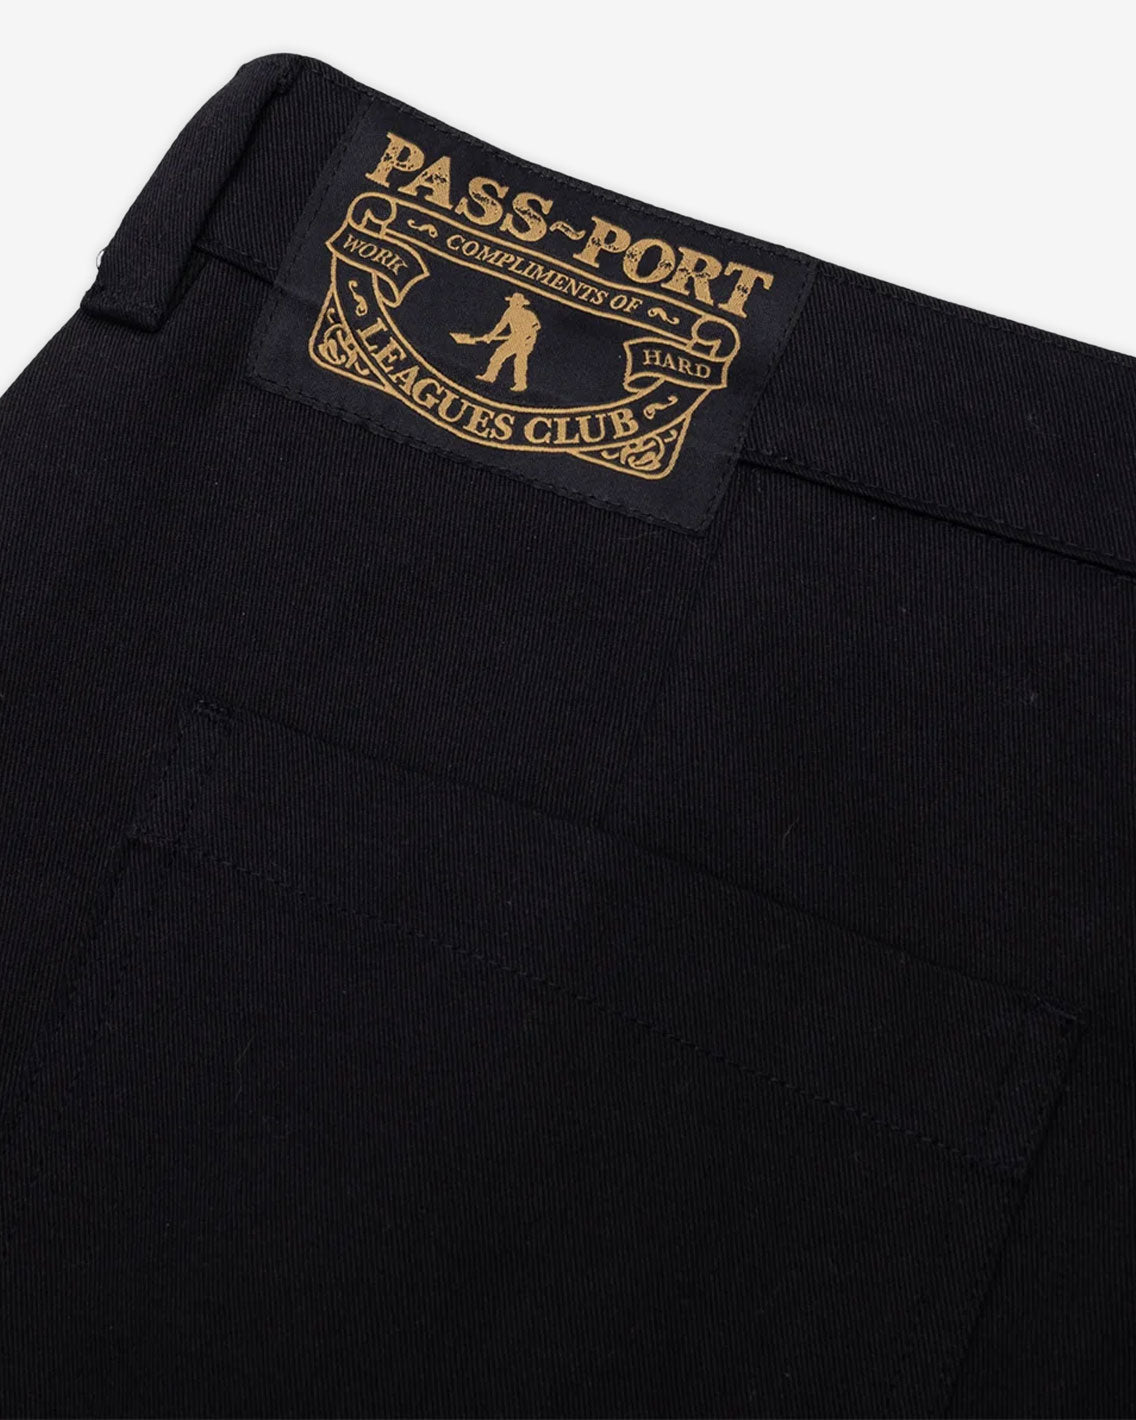 Pass~Port - Leagues Club Short - Black